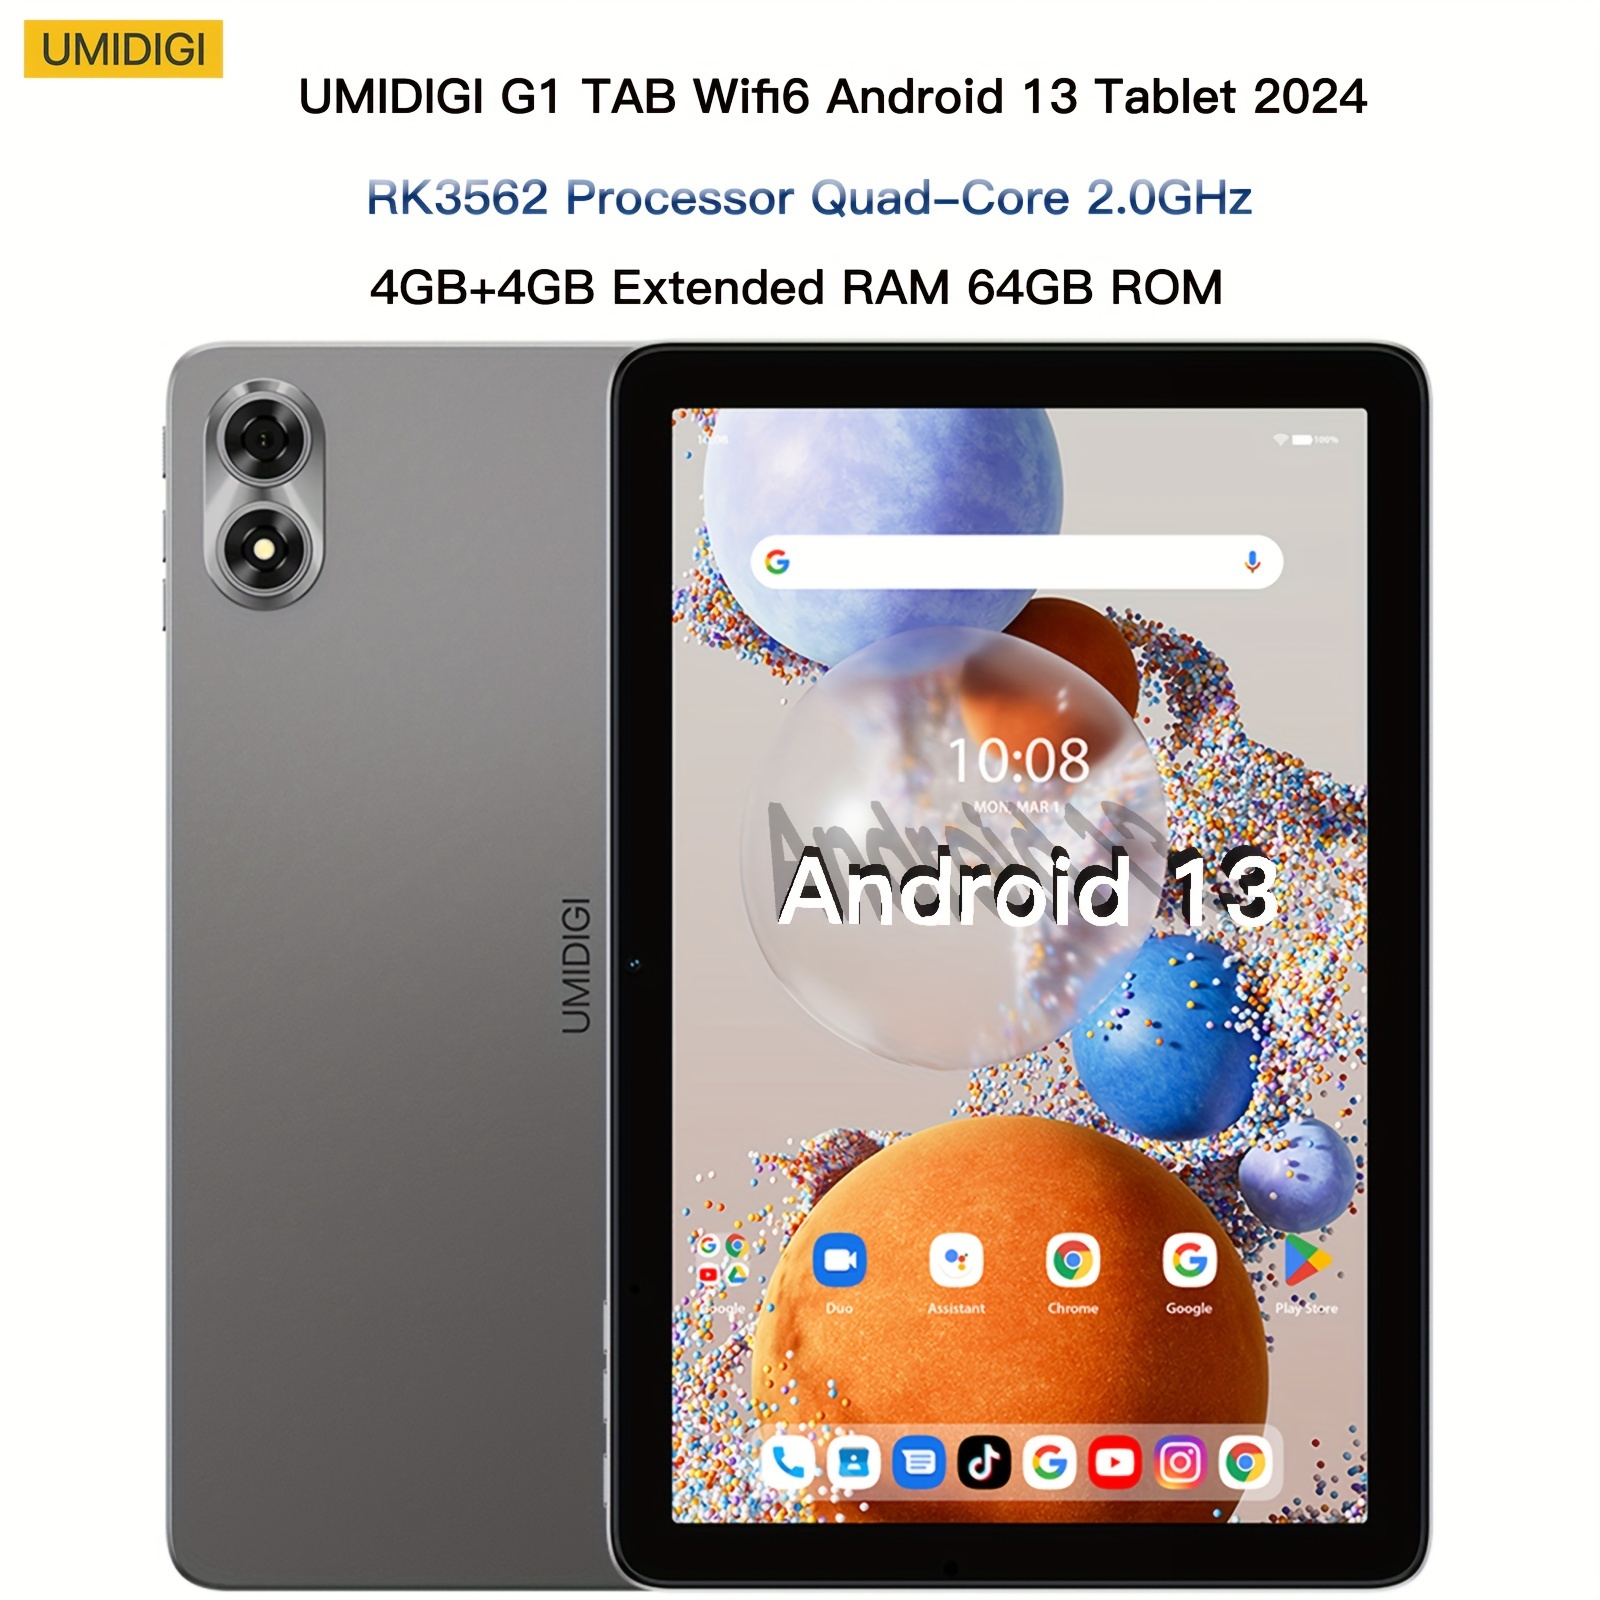  Tableta Android de 8 pulgadas, Android 12.0 Tableta 32GB  Almacenamiento 512GB SD Expansión Tablets PC, Procesador Quad-core 2GB RAM  1280x800 IPS HD Pantalla táctil Tabletas de doble cámara, compatible con  WiFi6